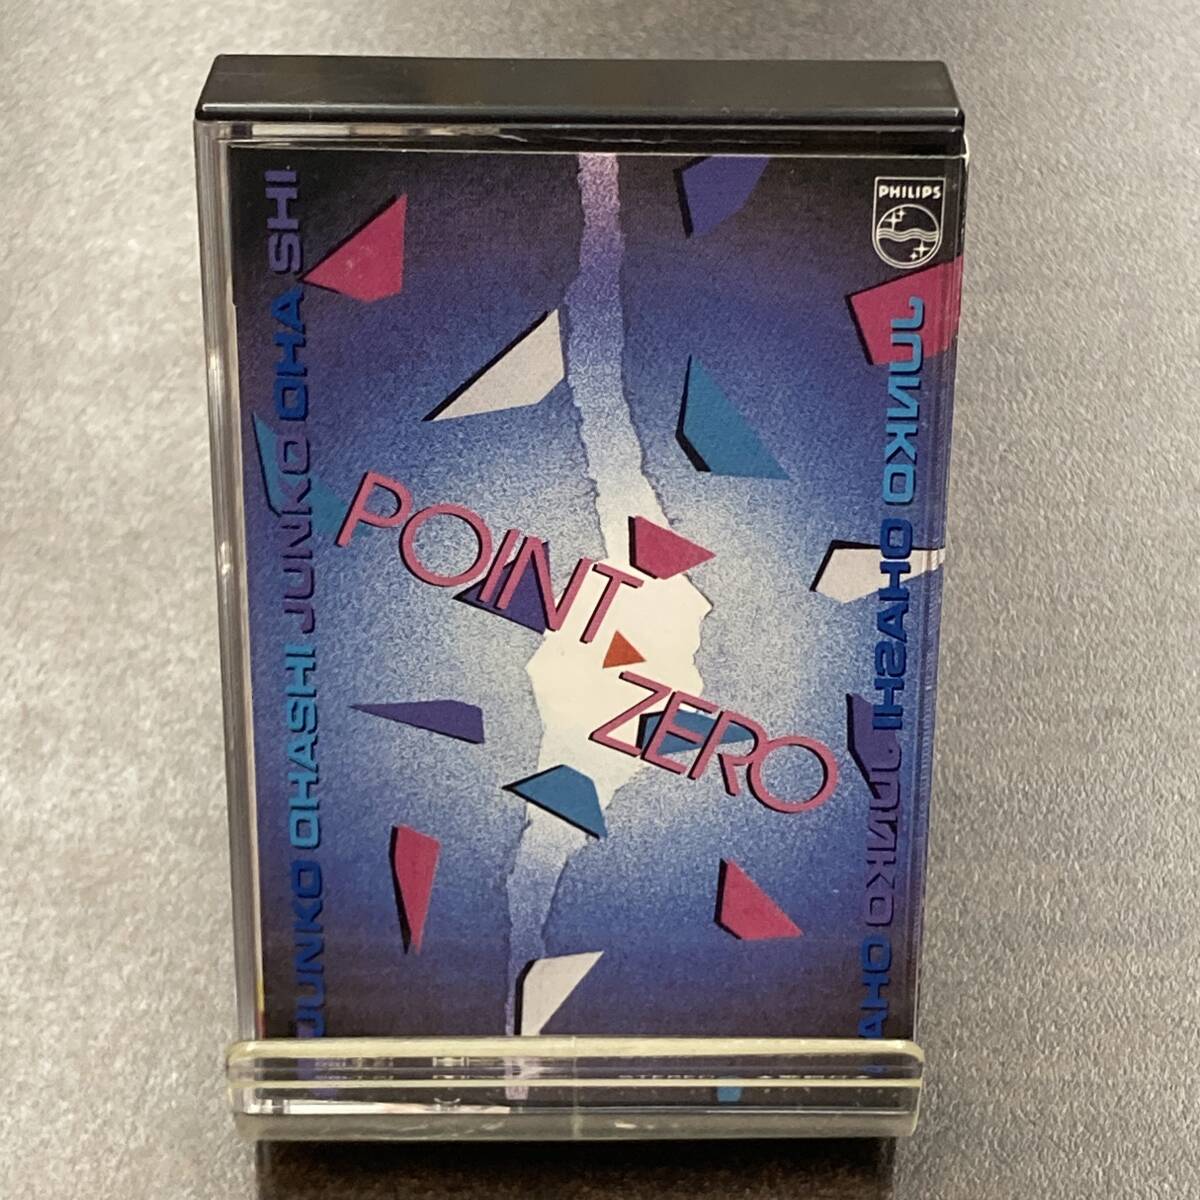 1155M 大橋純子 POINT ZERO カセットテープ / Jyunko Oohashi Citypop Cassette Tapeの画像1